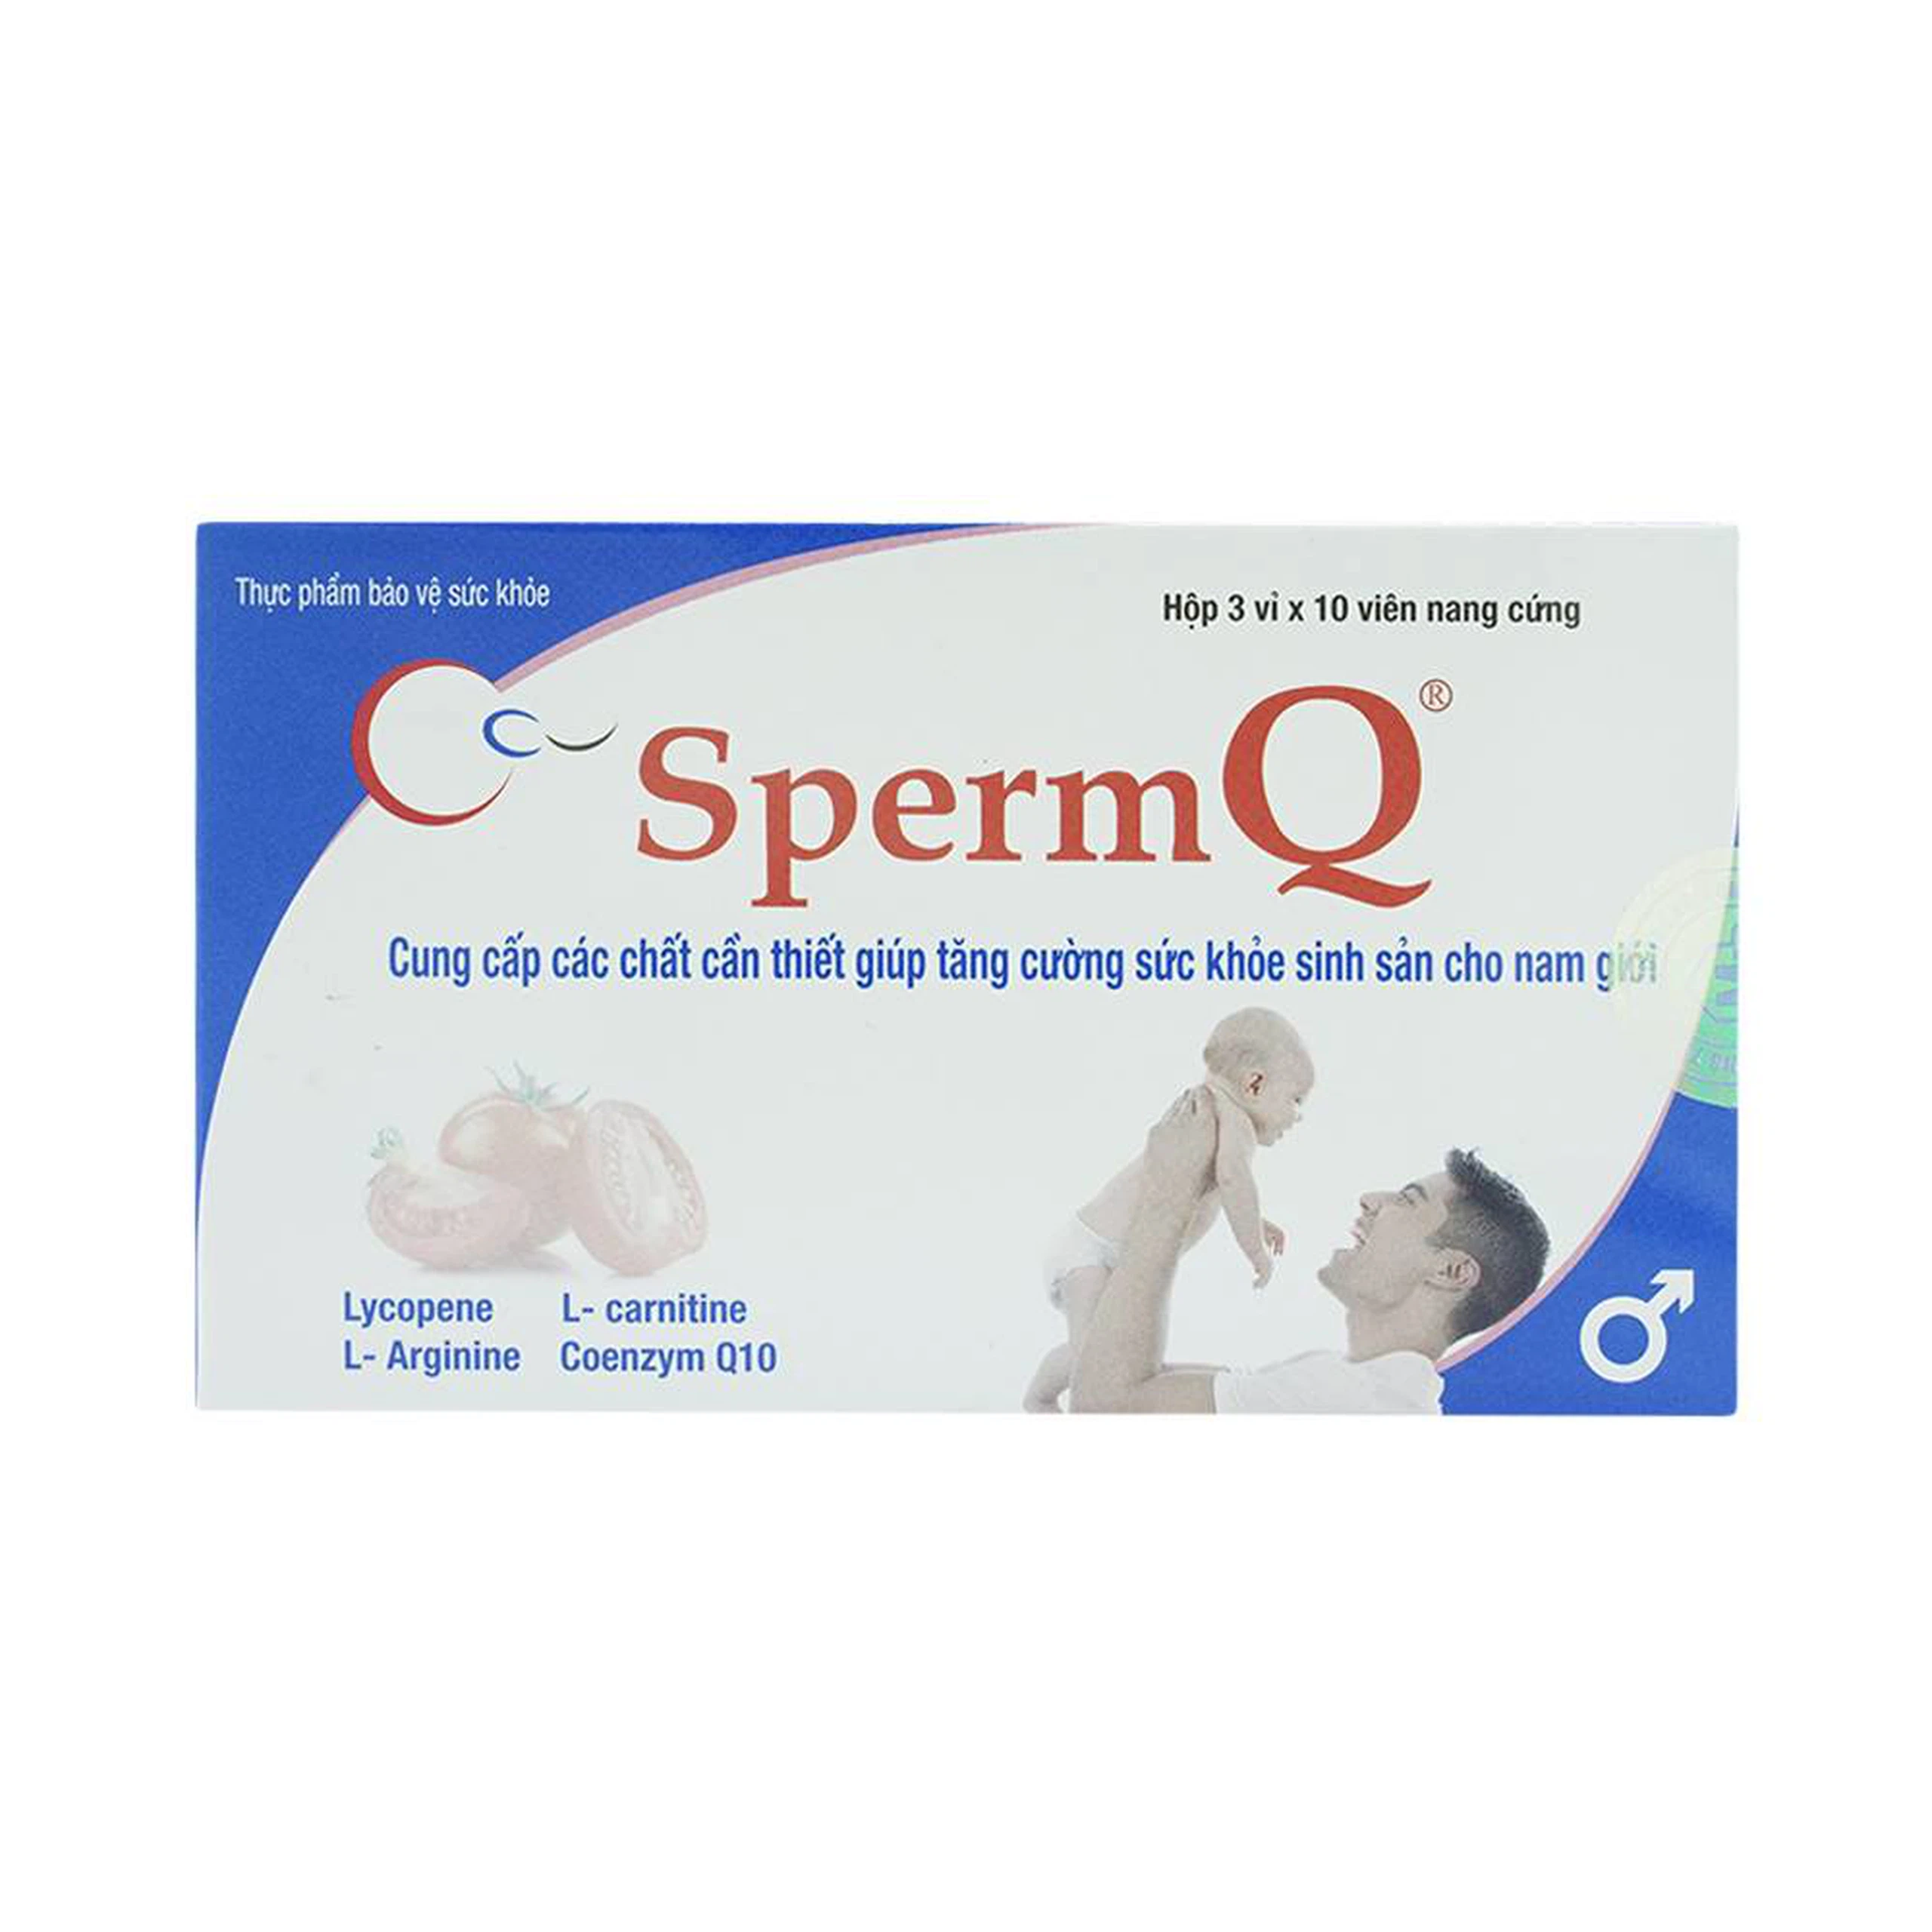 Viên uống SpermQ Mediplantex tăng cường tổng hợp nội tiết tố hỗ trợ sinh sản ở nam giới (3 vỉ x 10 viên)